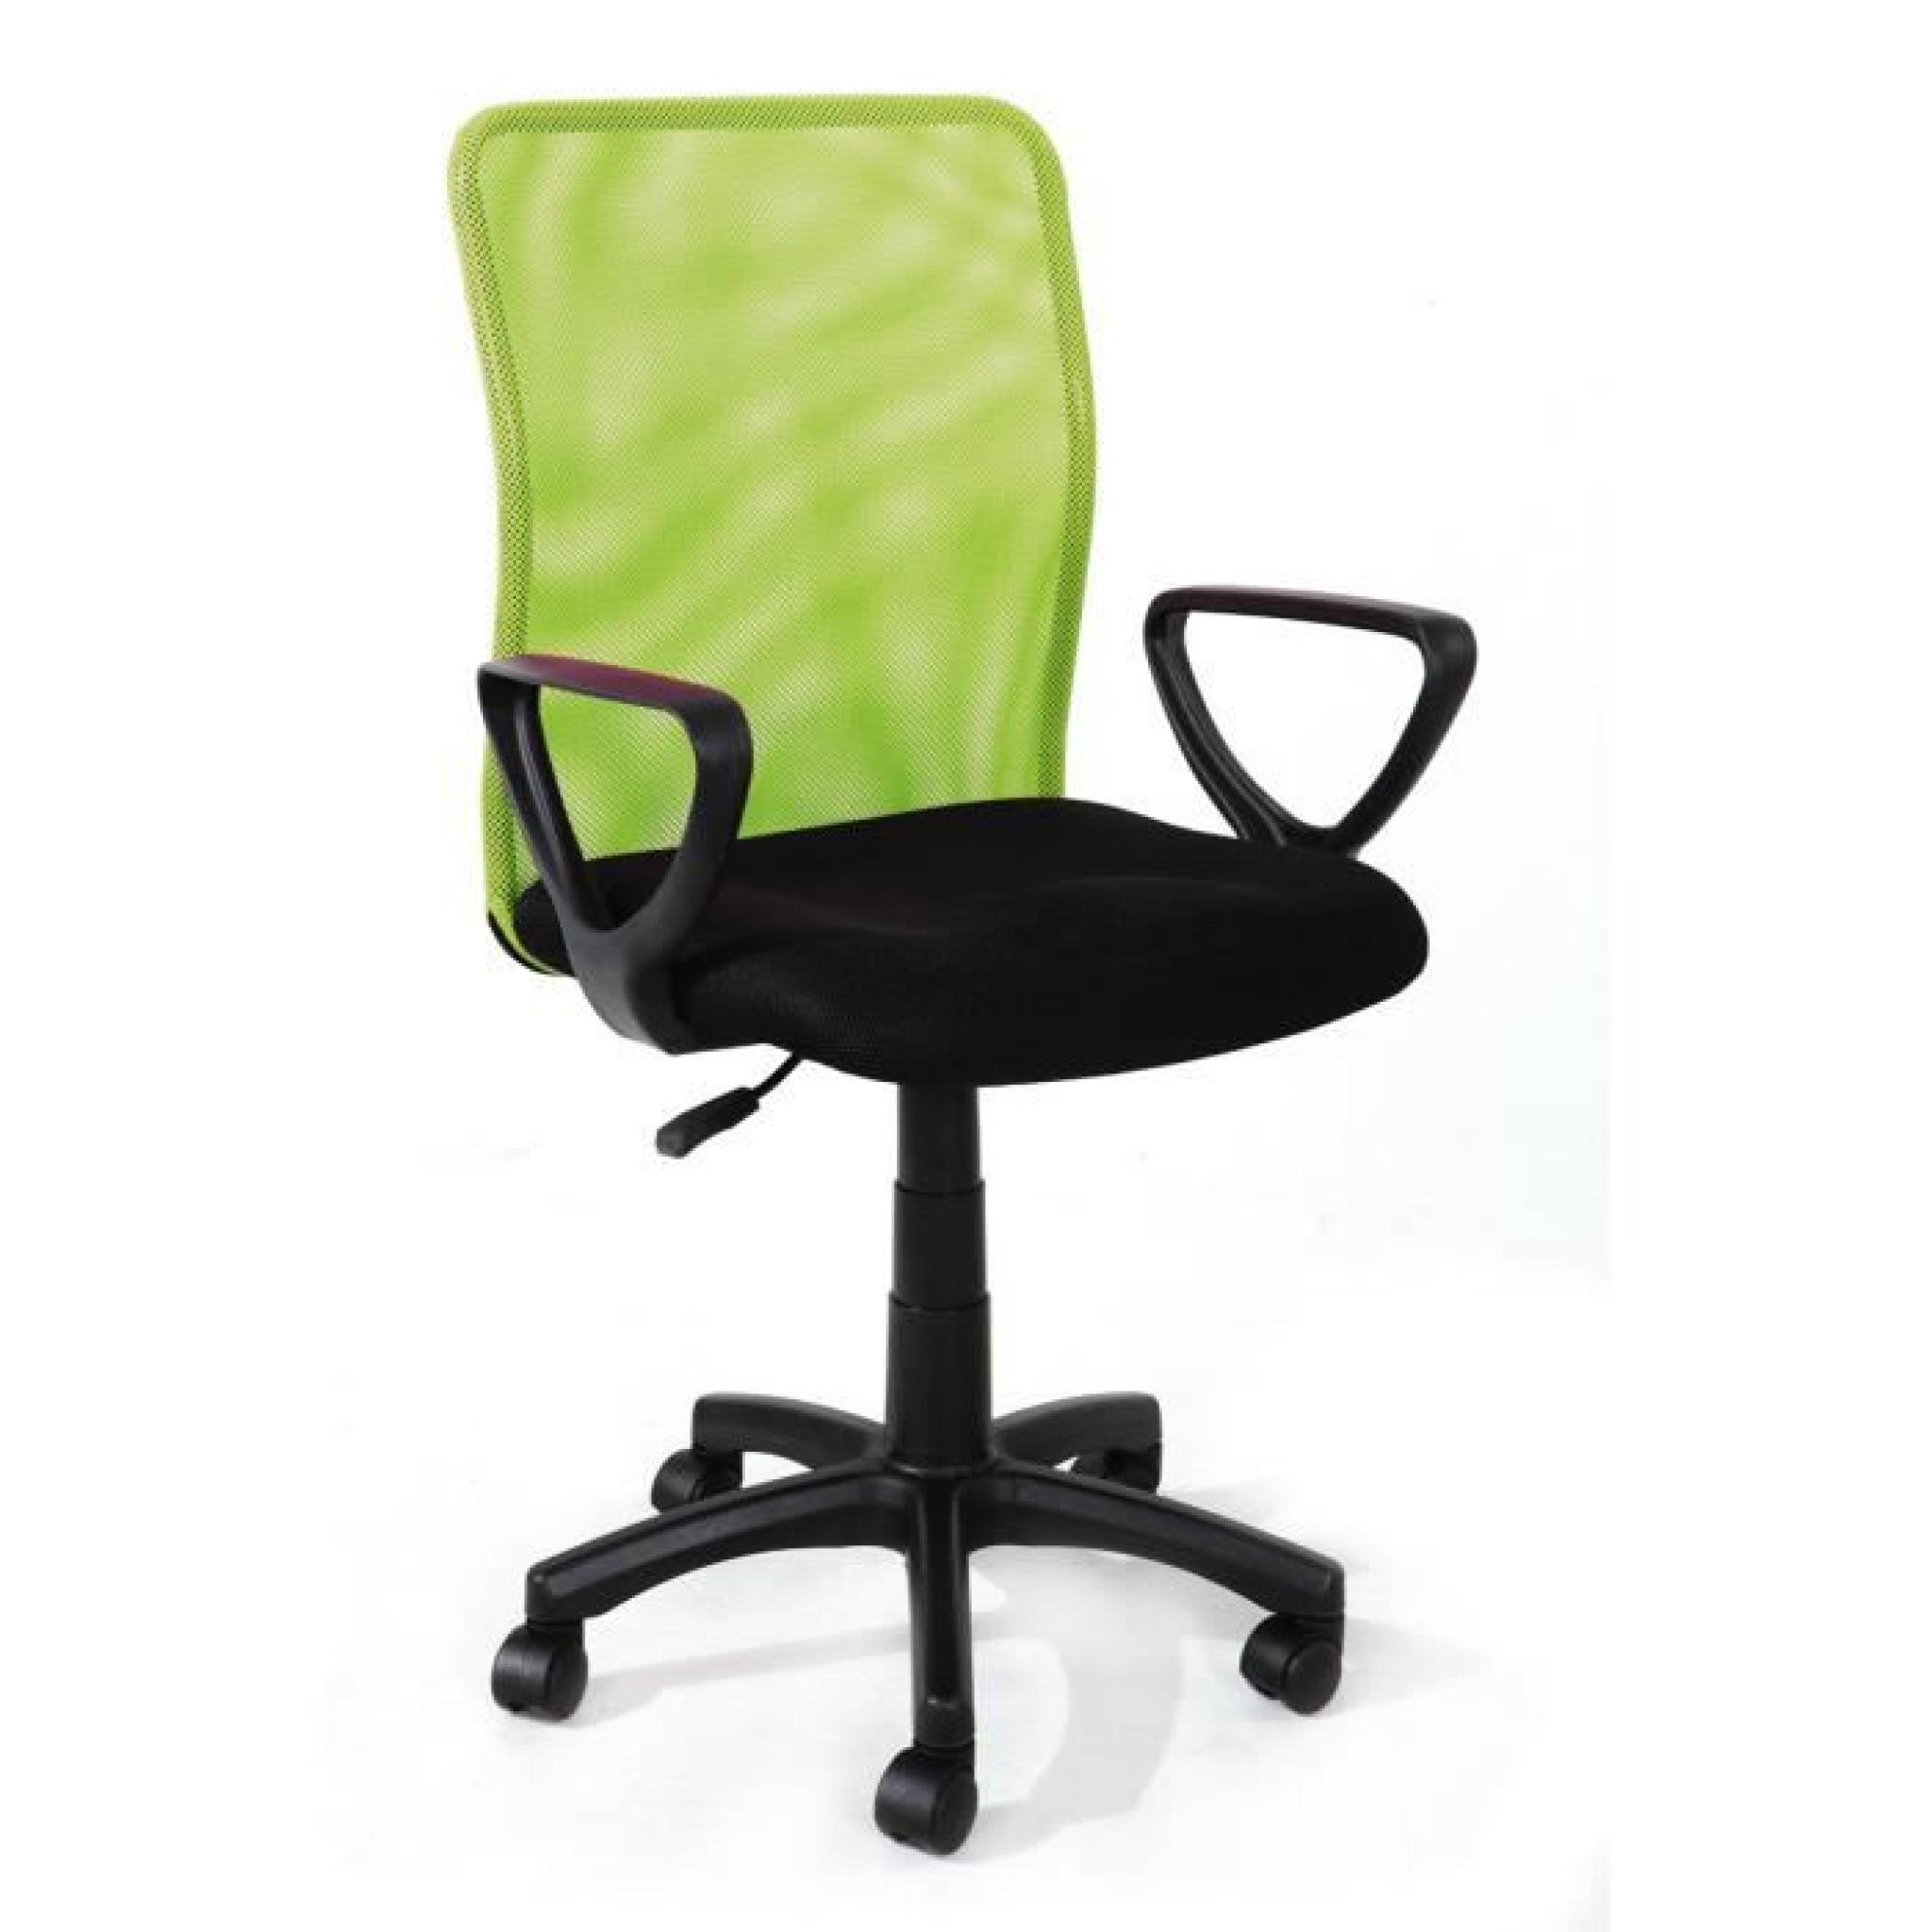 Chaise de bureau Noir-Vert 5 roulettes, Dimensions : 84 x 59 x 45 cm